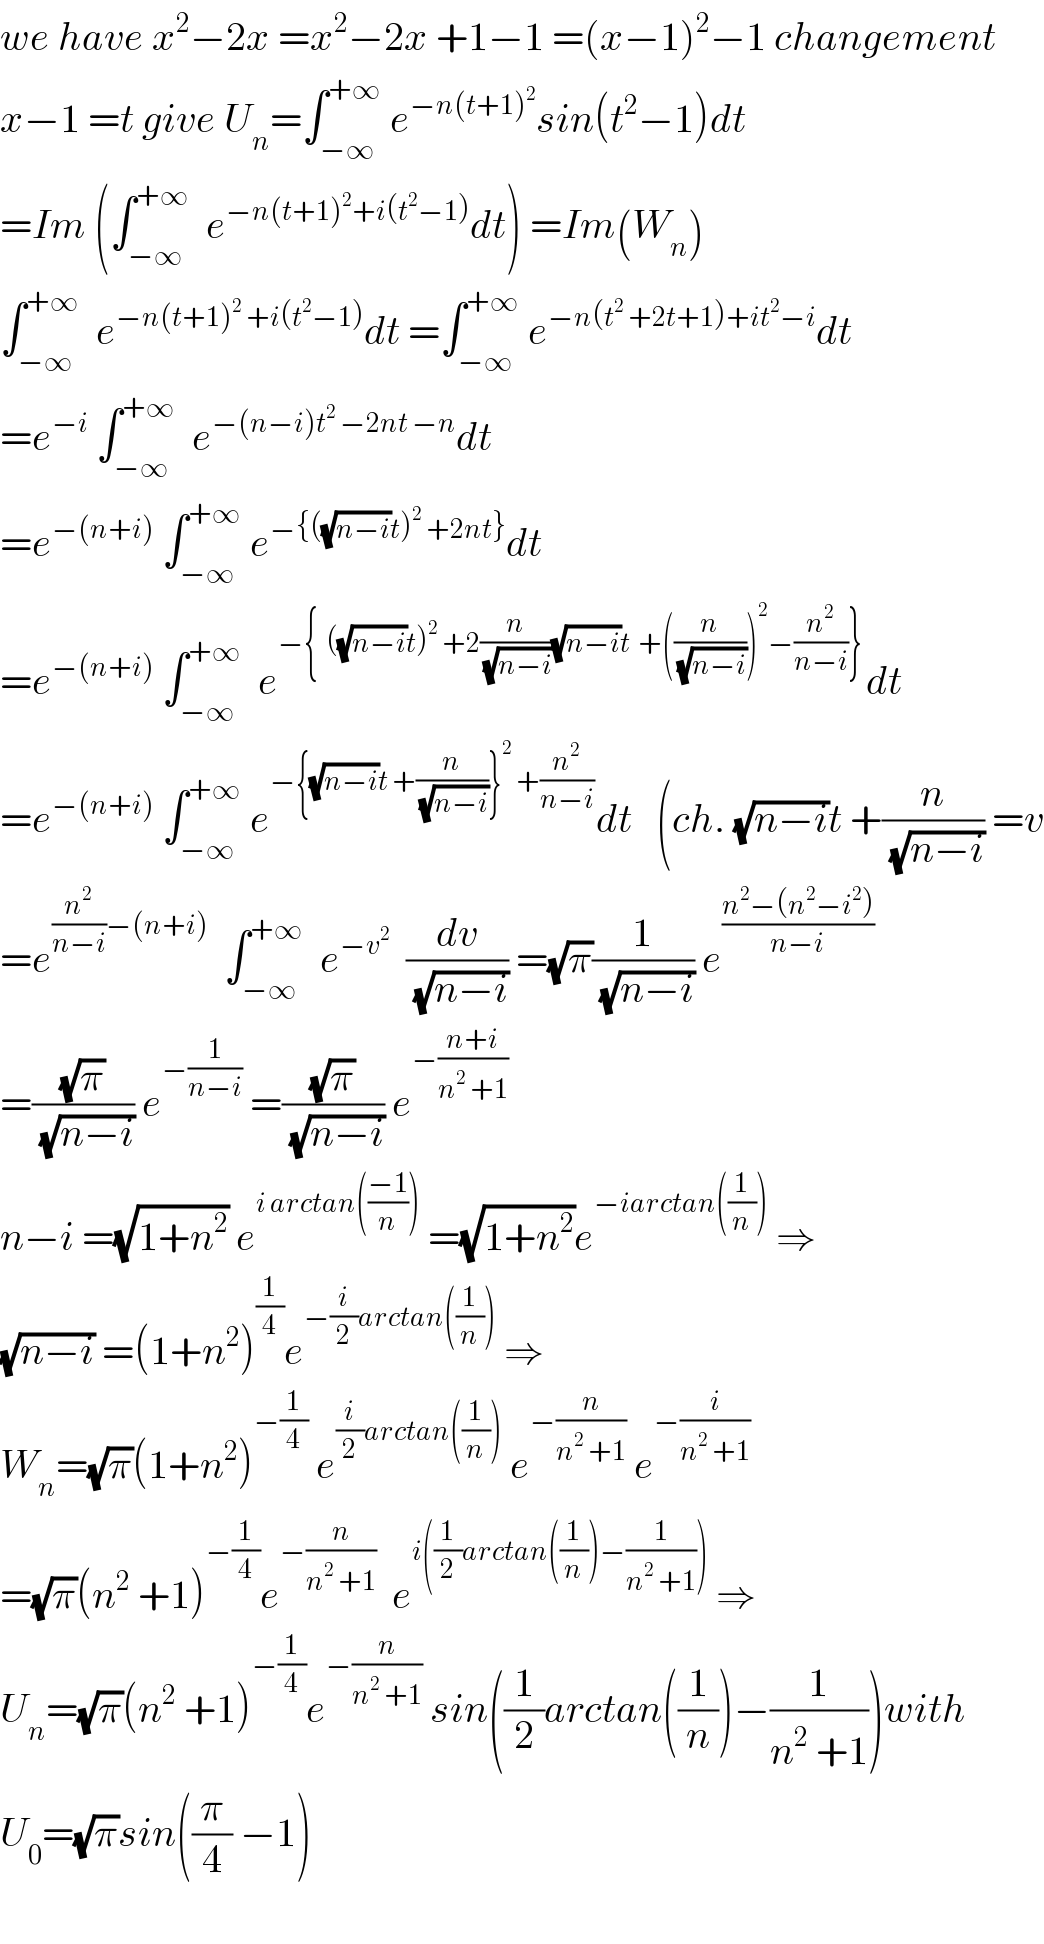 we have x^2 −2x =x^2 −2x +1−1 =(x−1)^2 −1 changement  x−1 =t give U_n =∫_(−∞) ^(+∞)  e^(−n(t+1)^2 ) sin(t^2 −1)dt  =Im (∫_(−∞) ^(+∞)   e^(−n(t+1)^2 +i(t^2 −1)) dt) =Im(W_n )  ∫_(−∞) ^(+∞)   e^(−n(t+1)^2  +i(t^2 −1)) dt =∫_(−∞) ^(+∞)  e^(−n(t^2  +2t+1)+it^2 −i) dt  =e^(−i)  ∫_(−∞) ^(+∞)   e^(−(n−i)t^2  −2nt −n) dt  =e^(−(n+i))  ∫_(−∞) ^(+∞)  e^(−{((√(n−i))t)^2  +2nt}) dt  =e^(−(n+i))  ∫_(−∞) ^(+∞)   e^(−{  ((√(n−i))t)^2  +2(n/(√(n−i)))(√(n−i))t  +((n/(√(n−i))))^2 −(n^2 /(n−i))}) dt  =e^(−(n+i))  ∫_(−∞) ^(+∞)  e^(−{(√(n−i))t +(n/(√(n−i)))}^2  +(n^2 /(n−i))) dt   (ch. (√(n−i))t +(n/(√(n−i))) =v  =e^((n^2 /(n−i))−(n+i))   ∫_(−∞) ^(+∞)   e^(−v^2 )   (dv/(√(n−i))) =(√π)(1/(√(n−i))) e^((n^2 −(n^2 −i^2 ))/(n−i))   =((√π)/(√(n−i))) e^(−(1/(n−i)))  =((√π)/(√(n−i))) e^(−((n+i)/(n^2  +1)))   n−i =(√(1+n^2 )) e^(i arctan(((−1)/n)))  =(√(1+n^2 ))e^(−iarctan((1/n)))  ⇒  (√(n−i)) =(1+n^2 )^(1/4) e^(−(i/2)arctan((1/n)))  ⇒  W_n =(√π)(1+n^2 )^(−(1/4))  e^((i/2)arctan((1/n)))  e^(−(n/(n^2  +1)))  e^(−(i/(n^2  +1)))   =(√π)(n^2  +1)^(−(1/4)) e^(−(n/(n^2  +1)))   e^(i((1/2)arctan((1/n))−(1/(n^2  +1))))  ⇒  U_n =(√π)(n^2  +1)^(−(1/4)) e^(−(n/(n^2  +1)))  sin((1/2)arctan((1/n))−(1/(n^2  +1)))with  U_0 =(√π)sin((π/4) −1)    